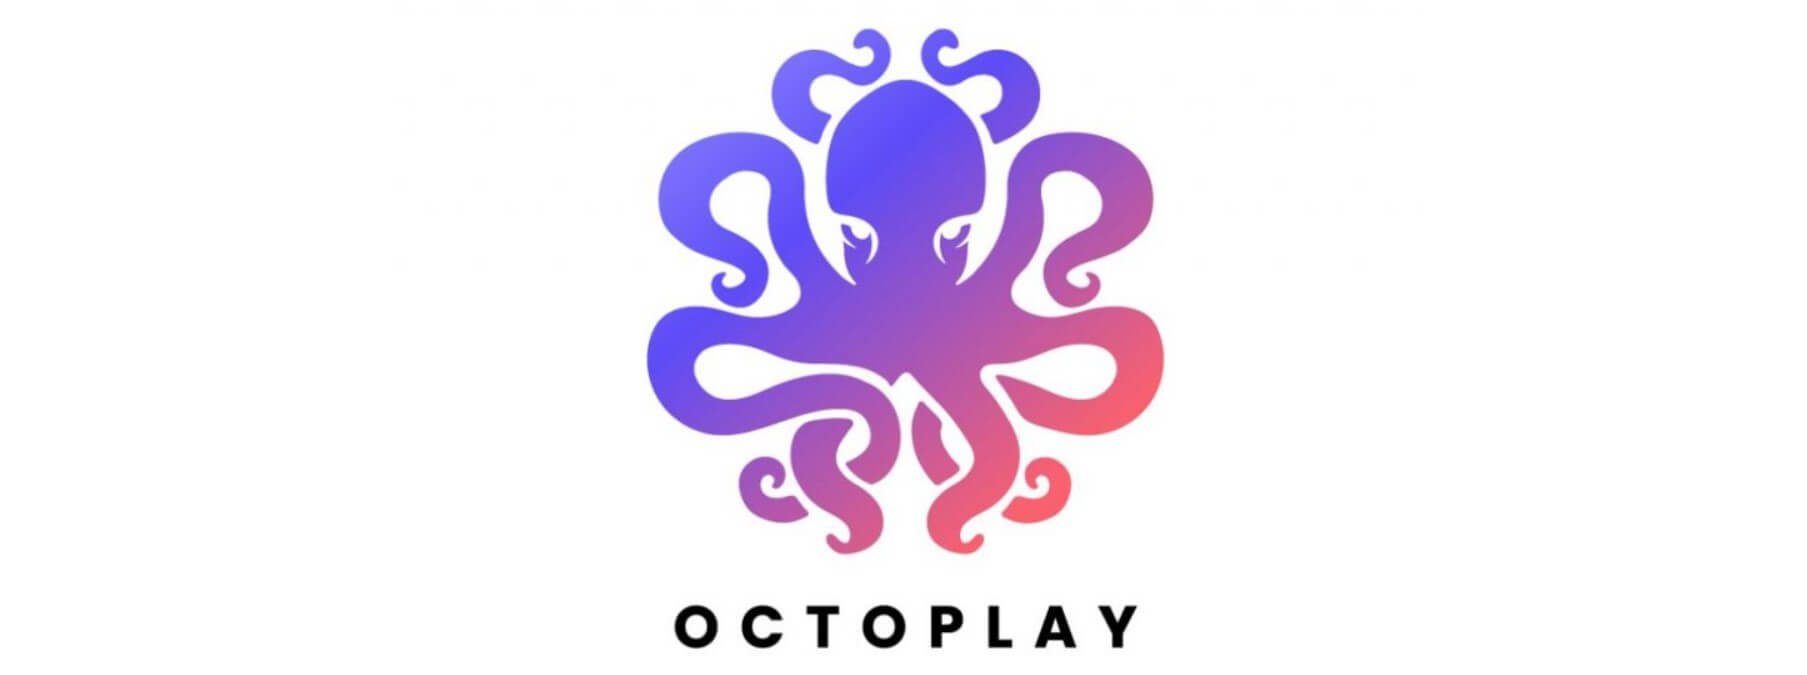 Octoplay geht an den Start